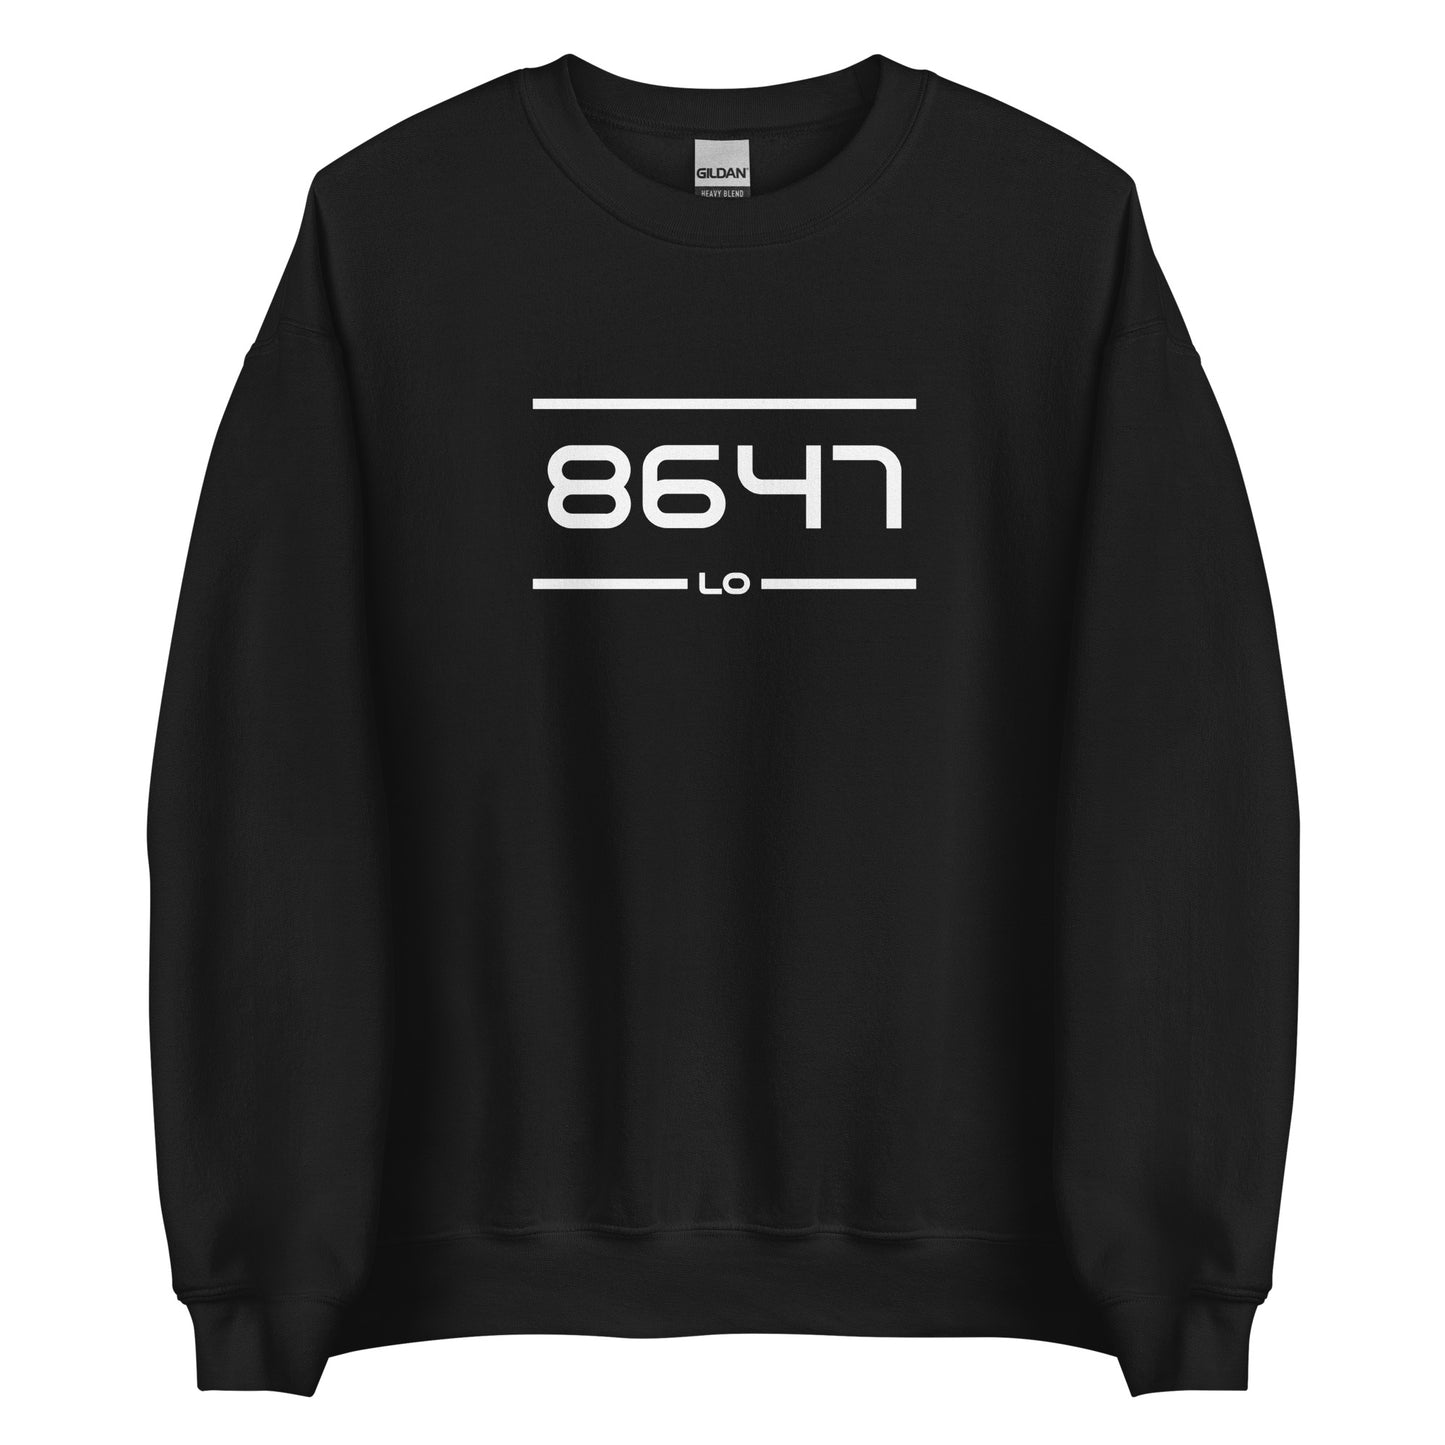 Sweater - 8647 - Lo (M/V)